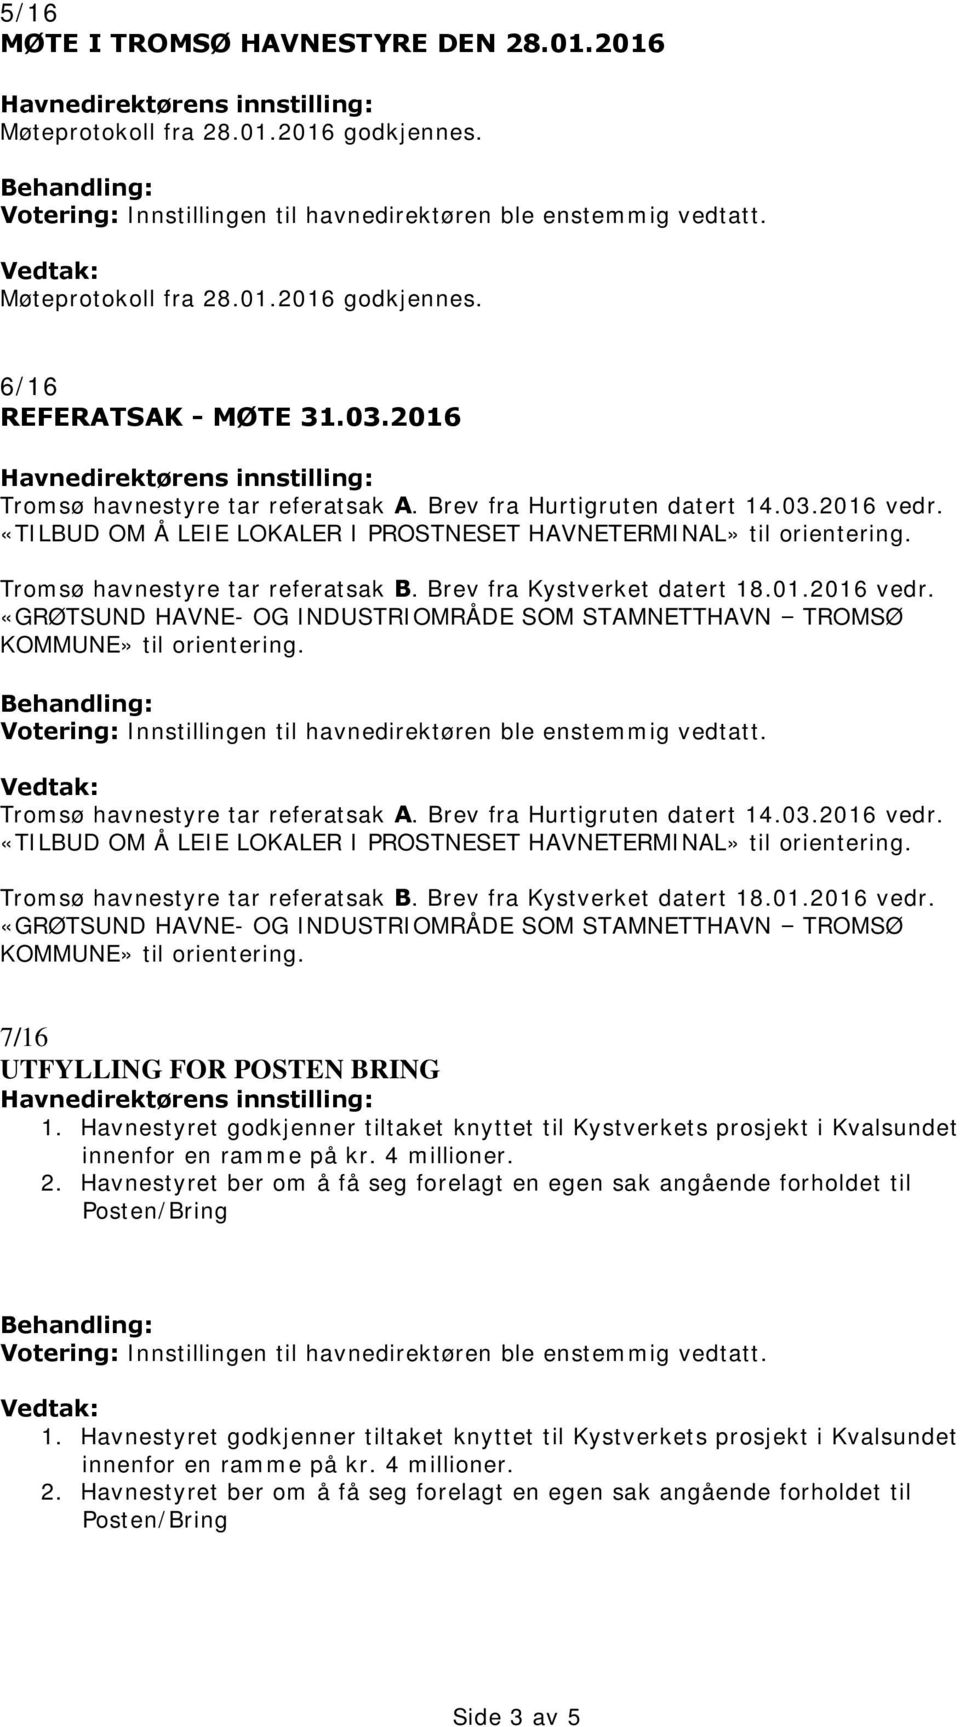 2016 Havnedirektørens innstilling: Tromsø havnestyre tar referatsak A. Brev fra Hurtigruten datert 14.03.2016 vedr. «TILBUD OM Å LEIE LOKALER I PROSTNESET HAVNETERMINAL» til orientering.